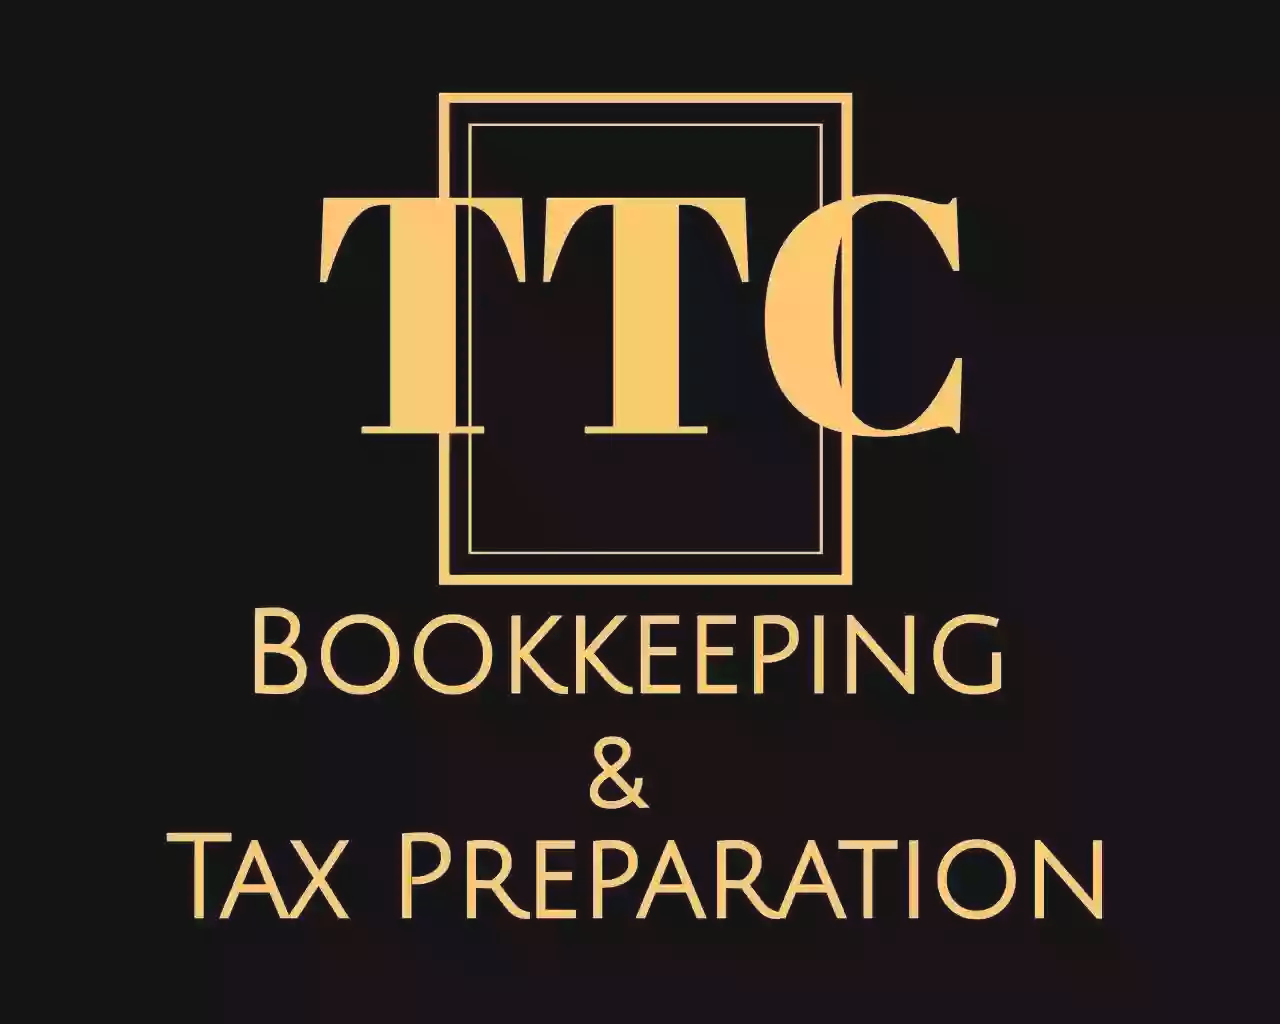 Tax The Cat (TTC) Bookkeeping & Tax Preparation